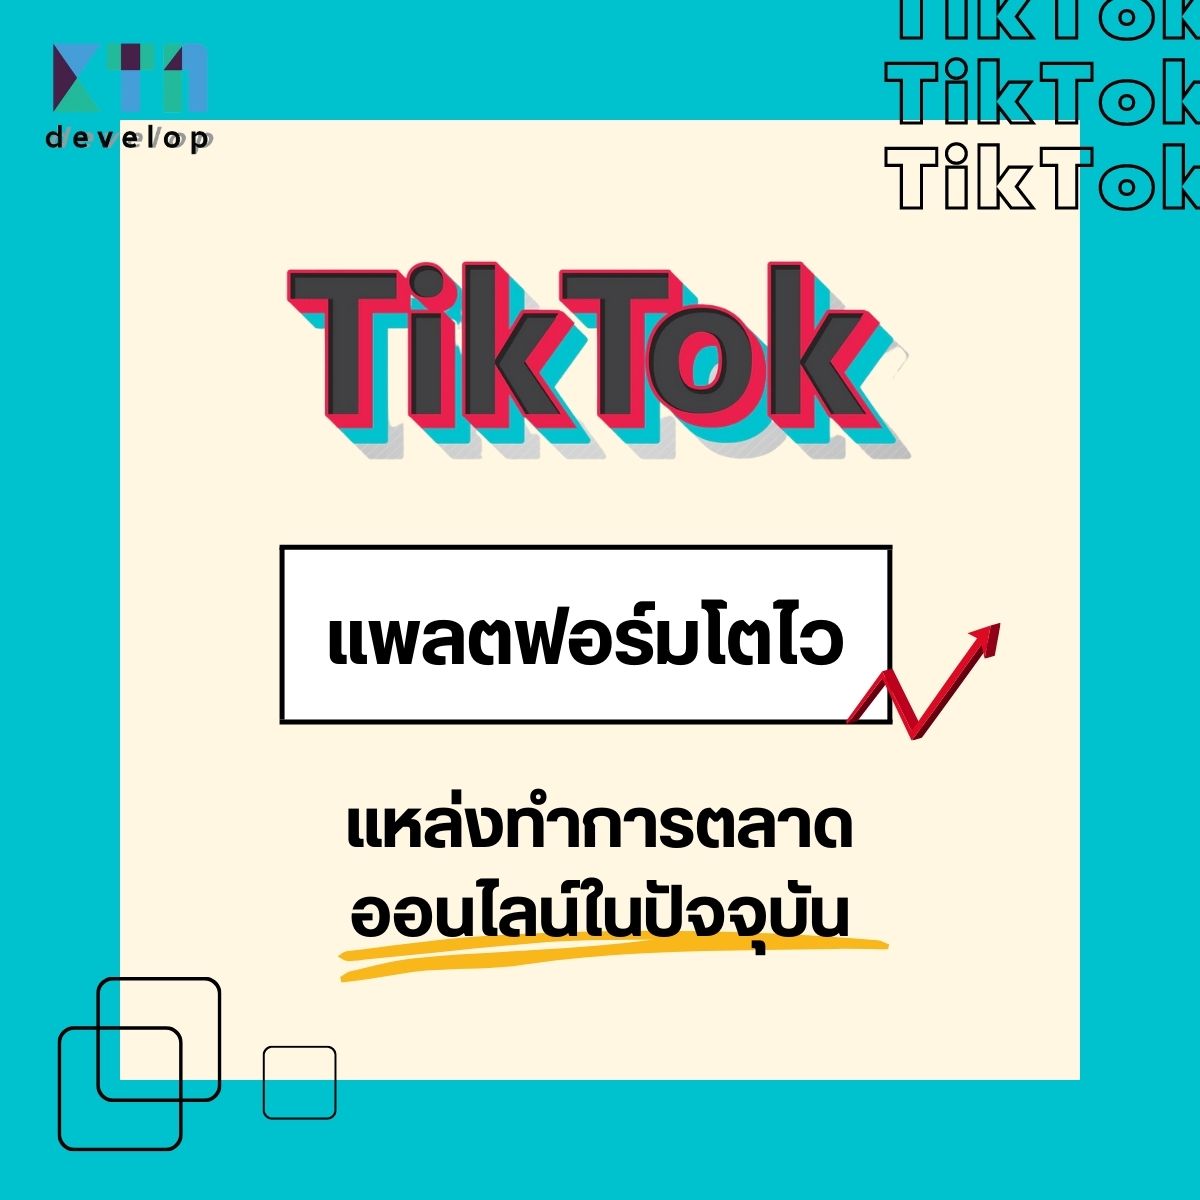 TikTok แพลตฟอร์มโตไว แหล่งทำการตลาดออนไลน์ในปัจจุบัน